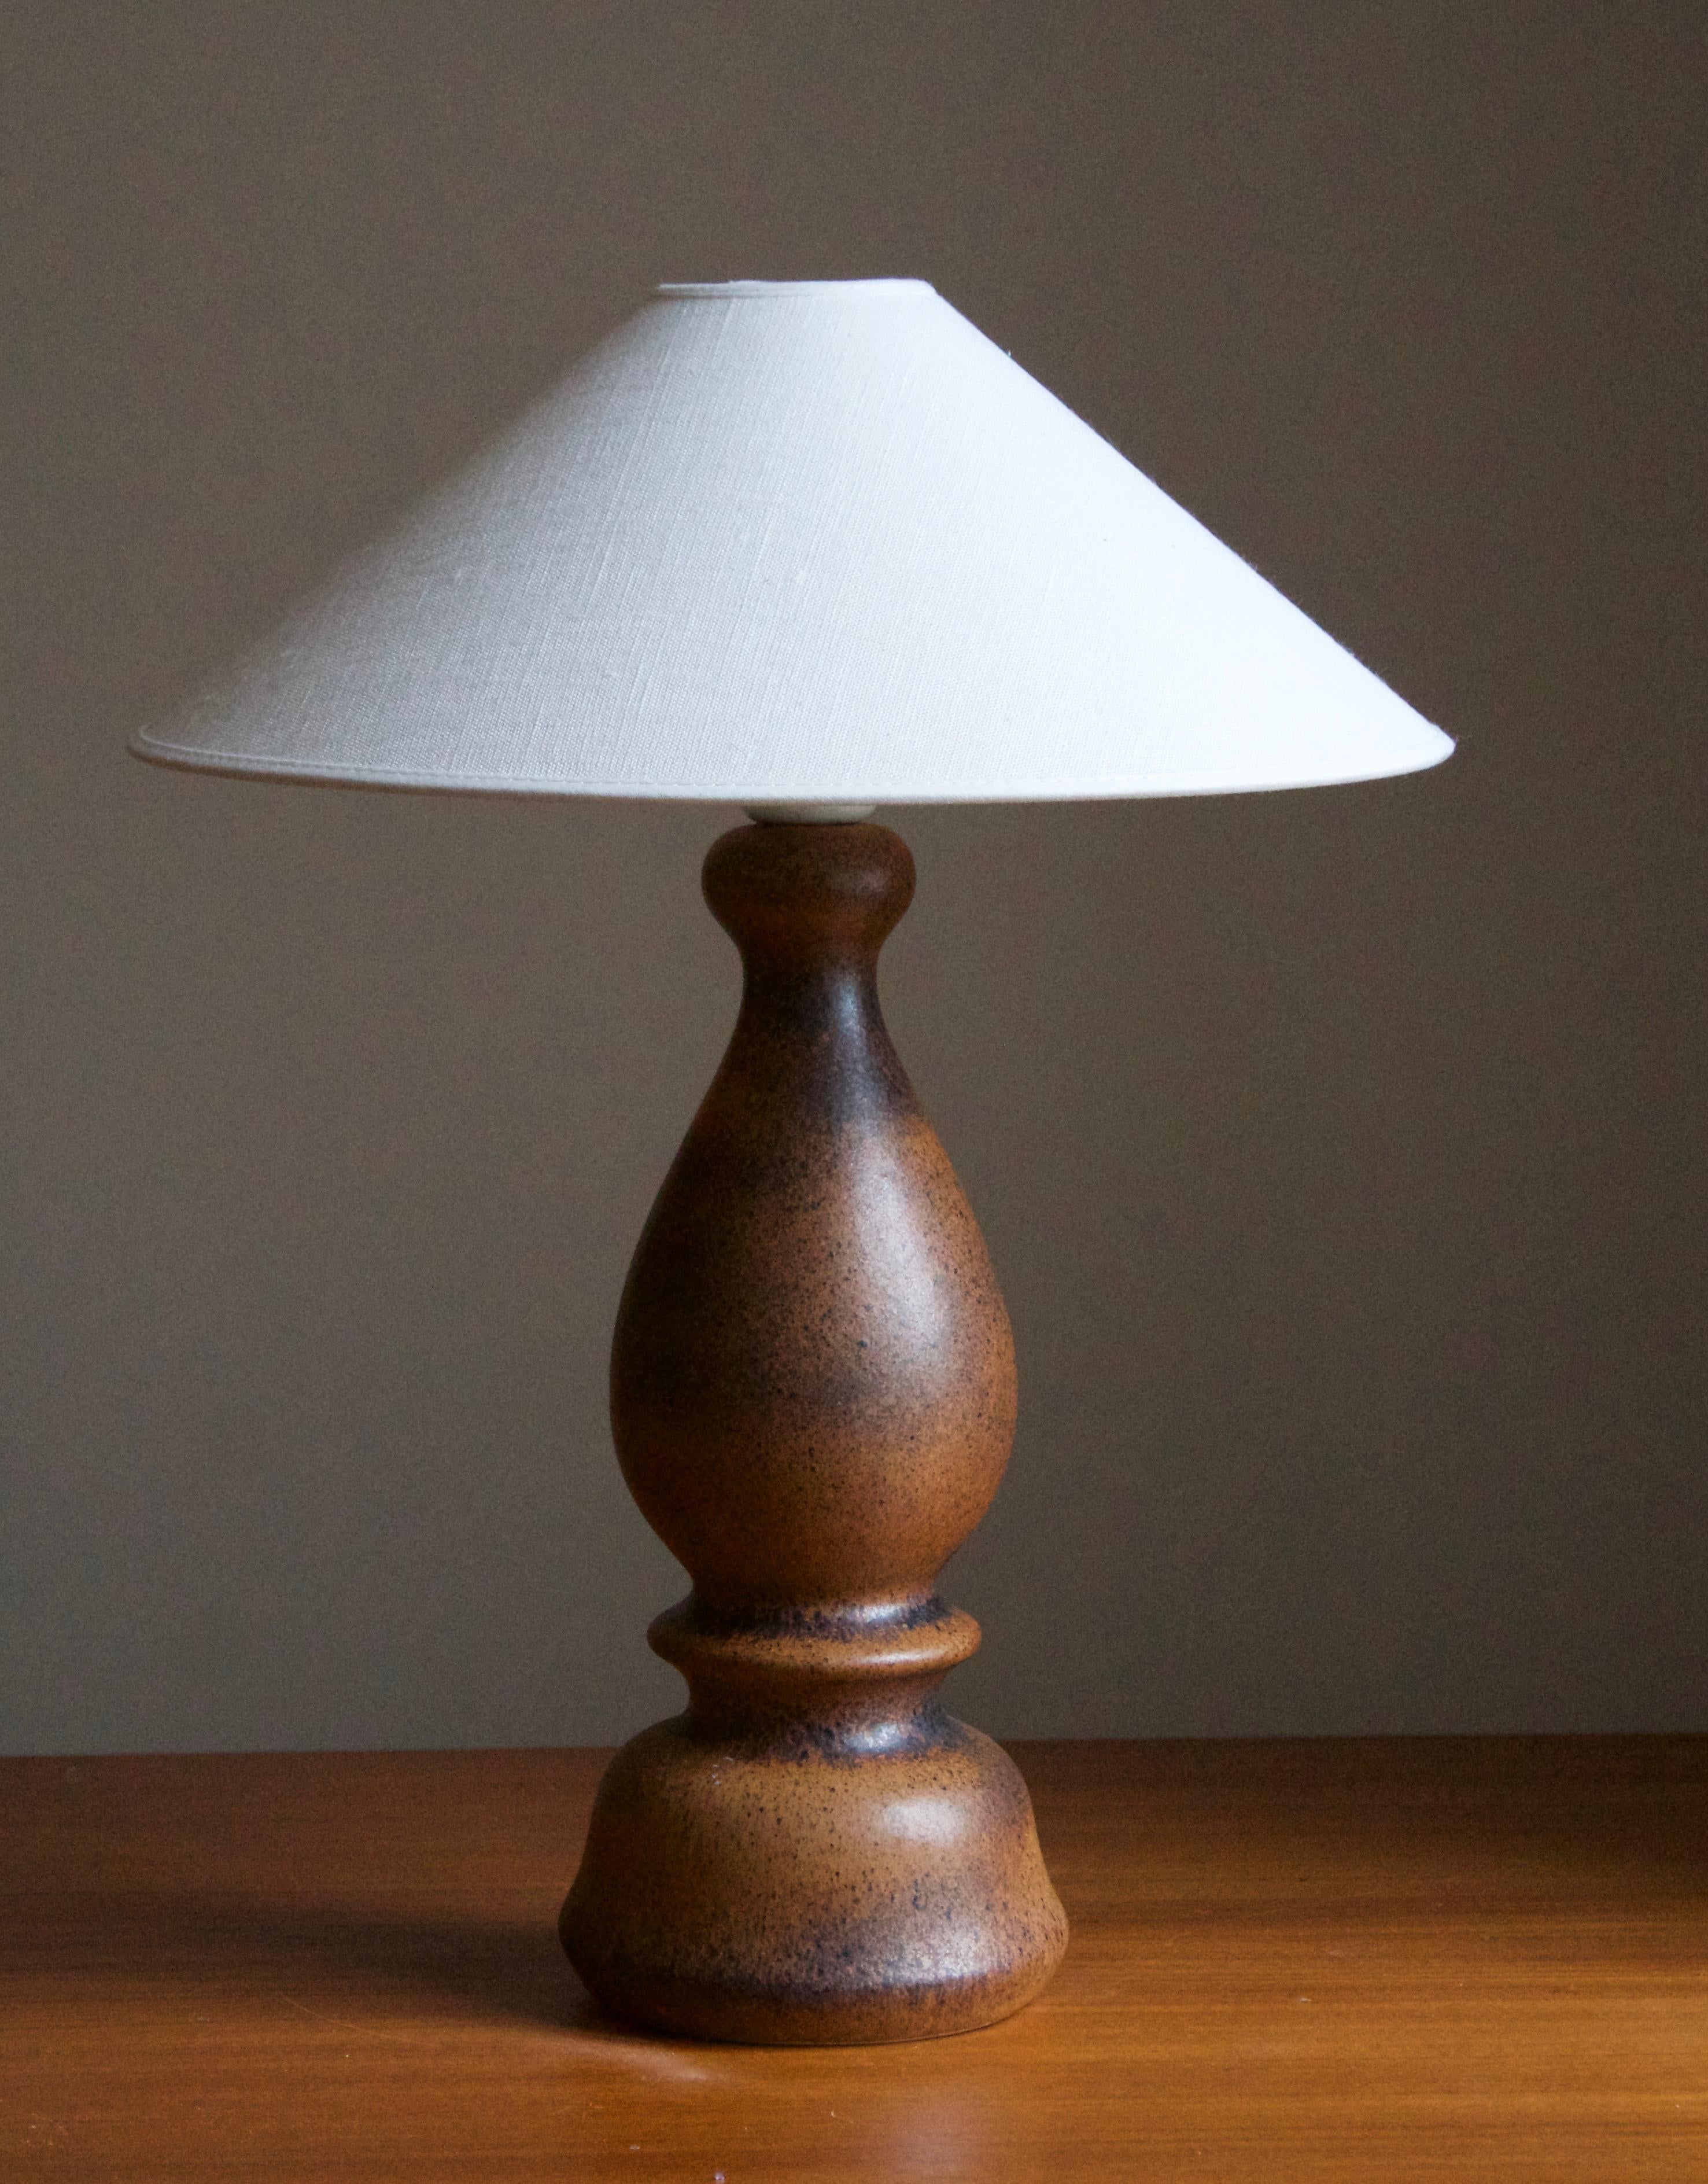 Une lampe de table en grès, exécutée par Bruno Karlsson. Dans son Studio, appelé 